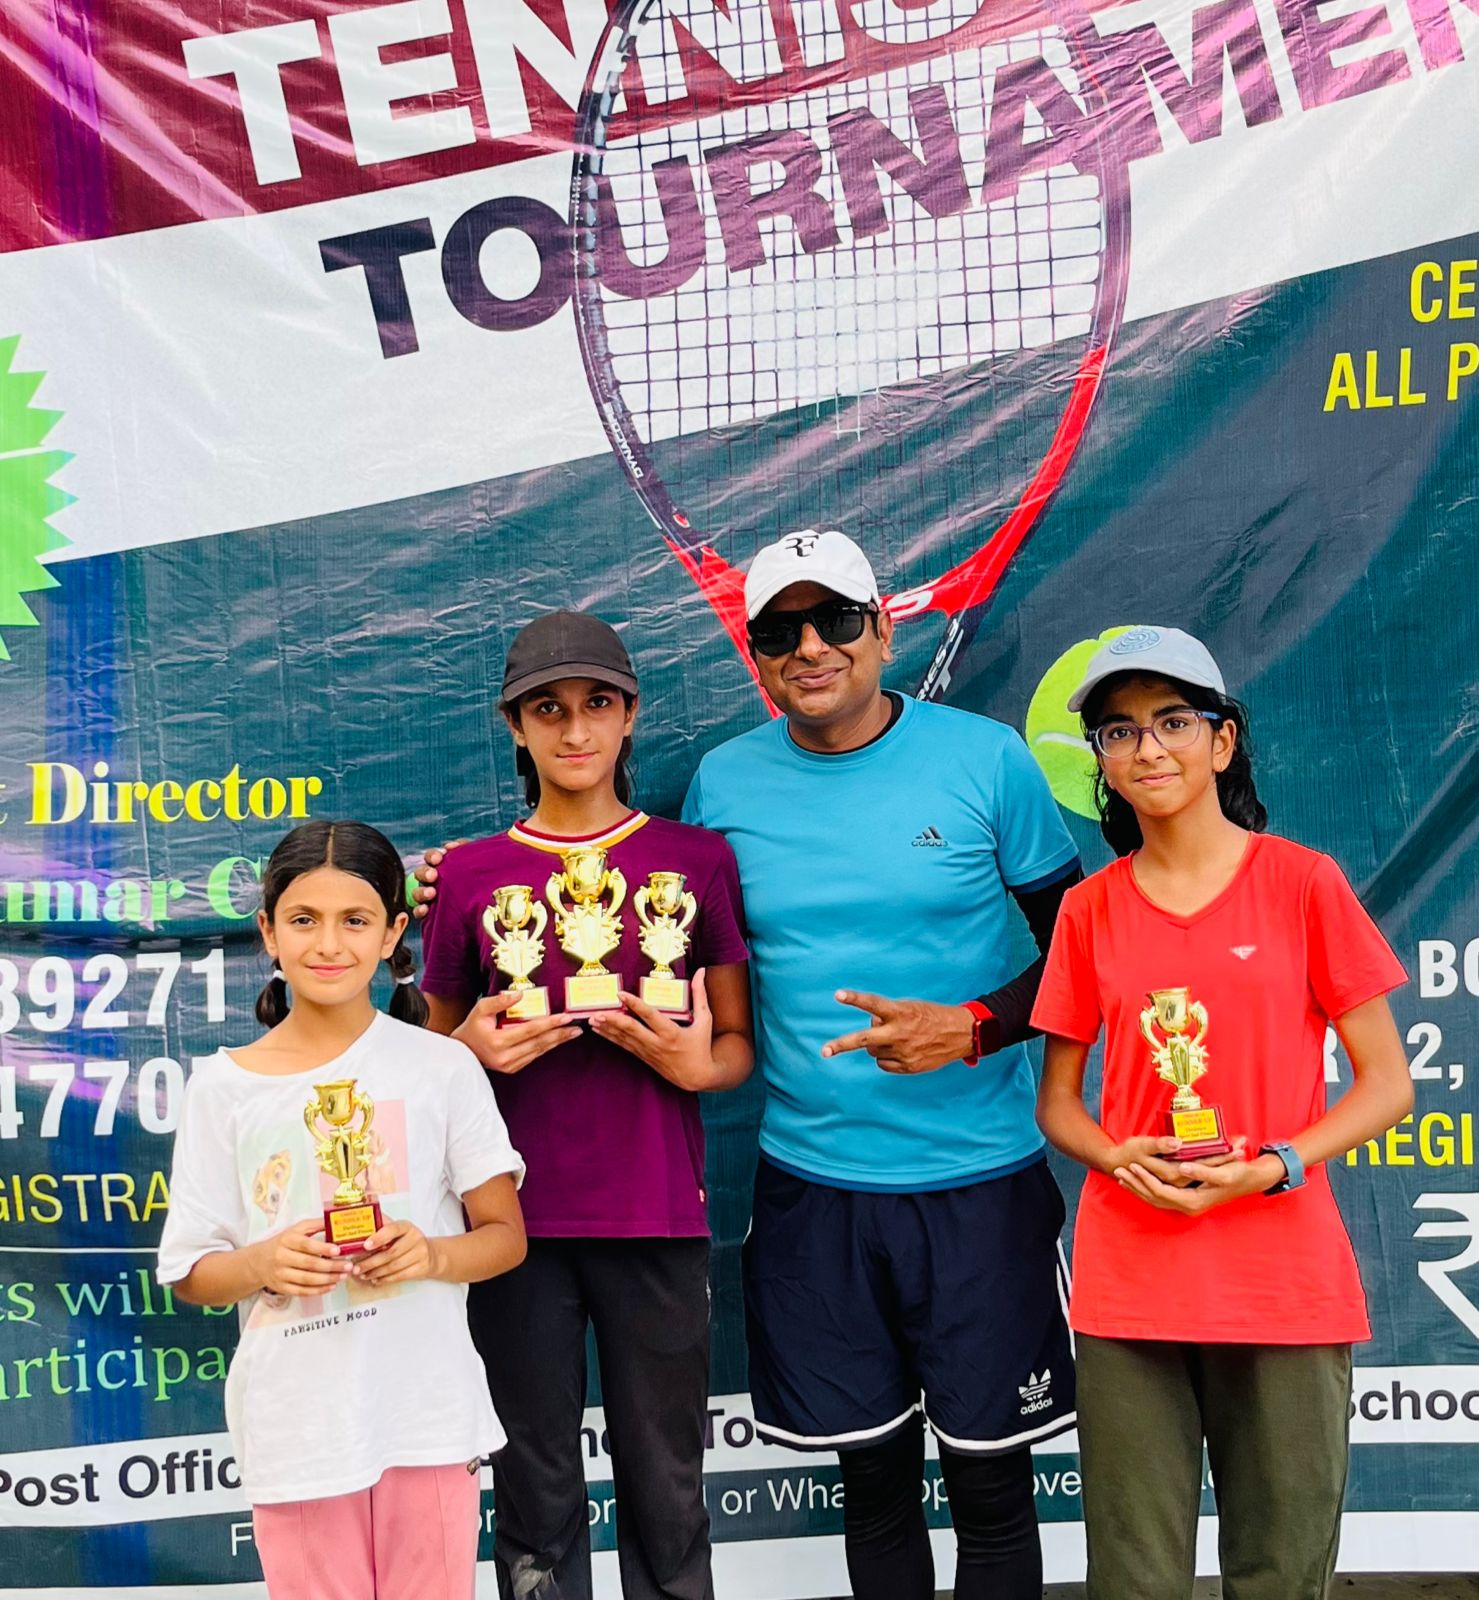 थ्रिलियोपिया स्पोर्ट्स एंड फिटनेस टेनिस ओपन चैंपियनशिप का हुआ आयोजन,अंडर 12 से अंडर16 तक की ये बनी विजेता।